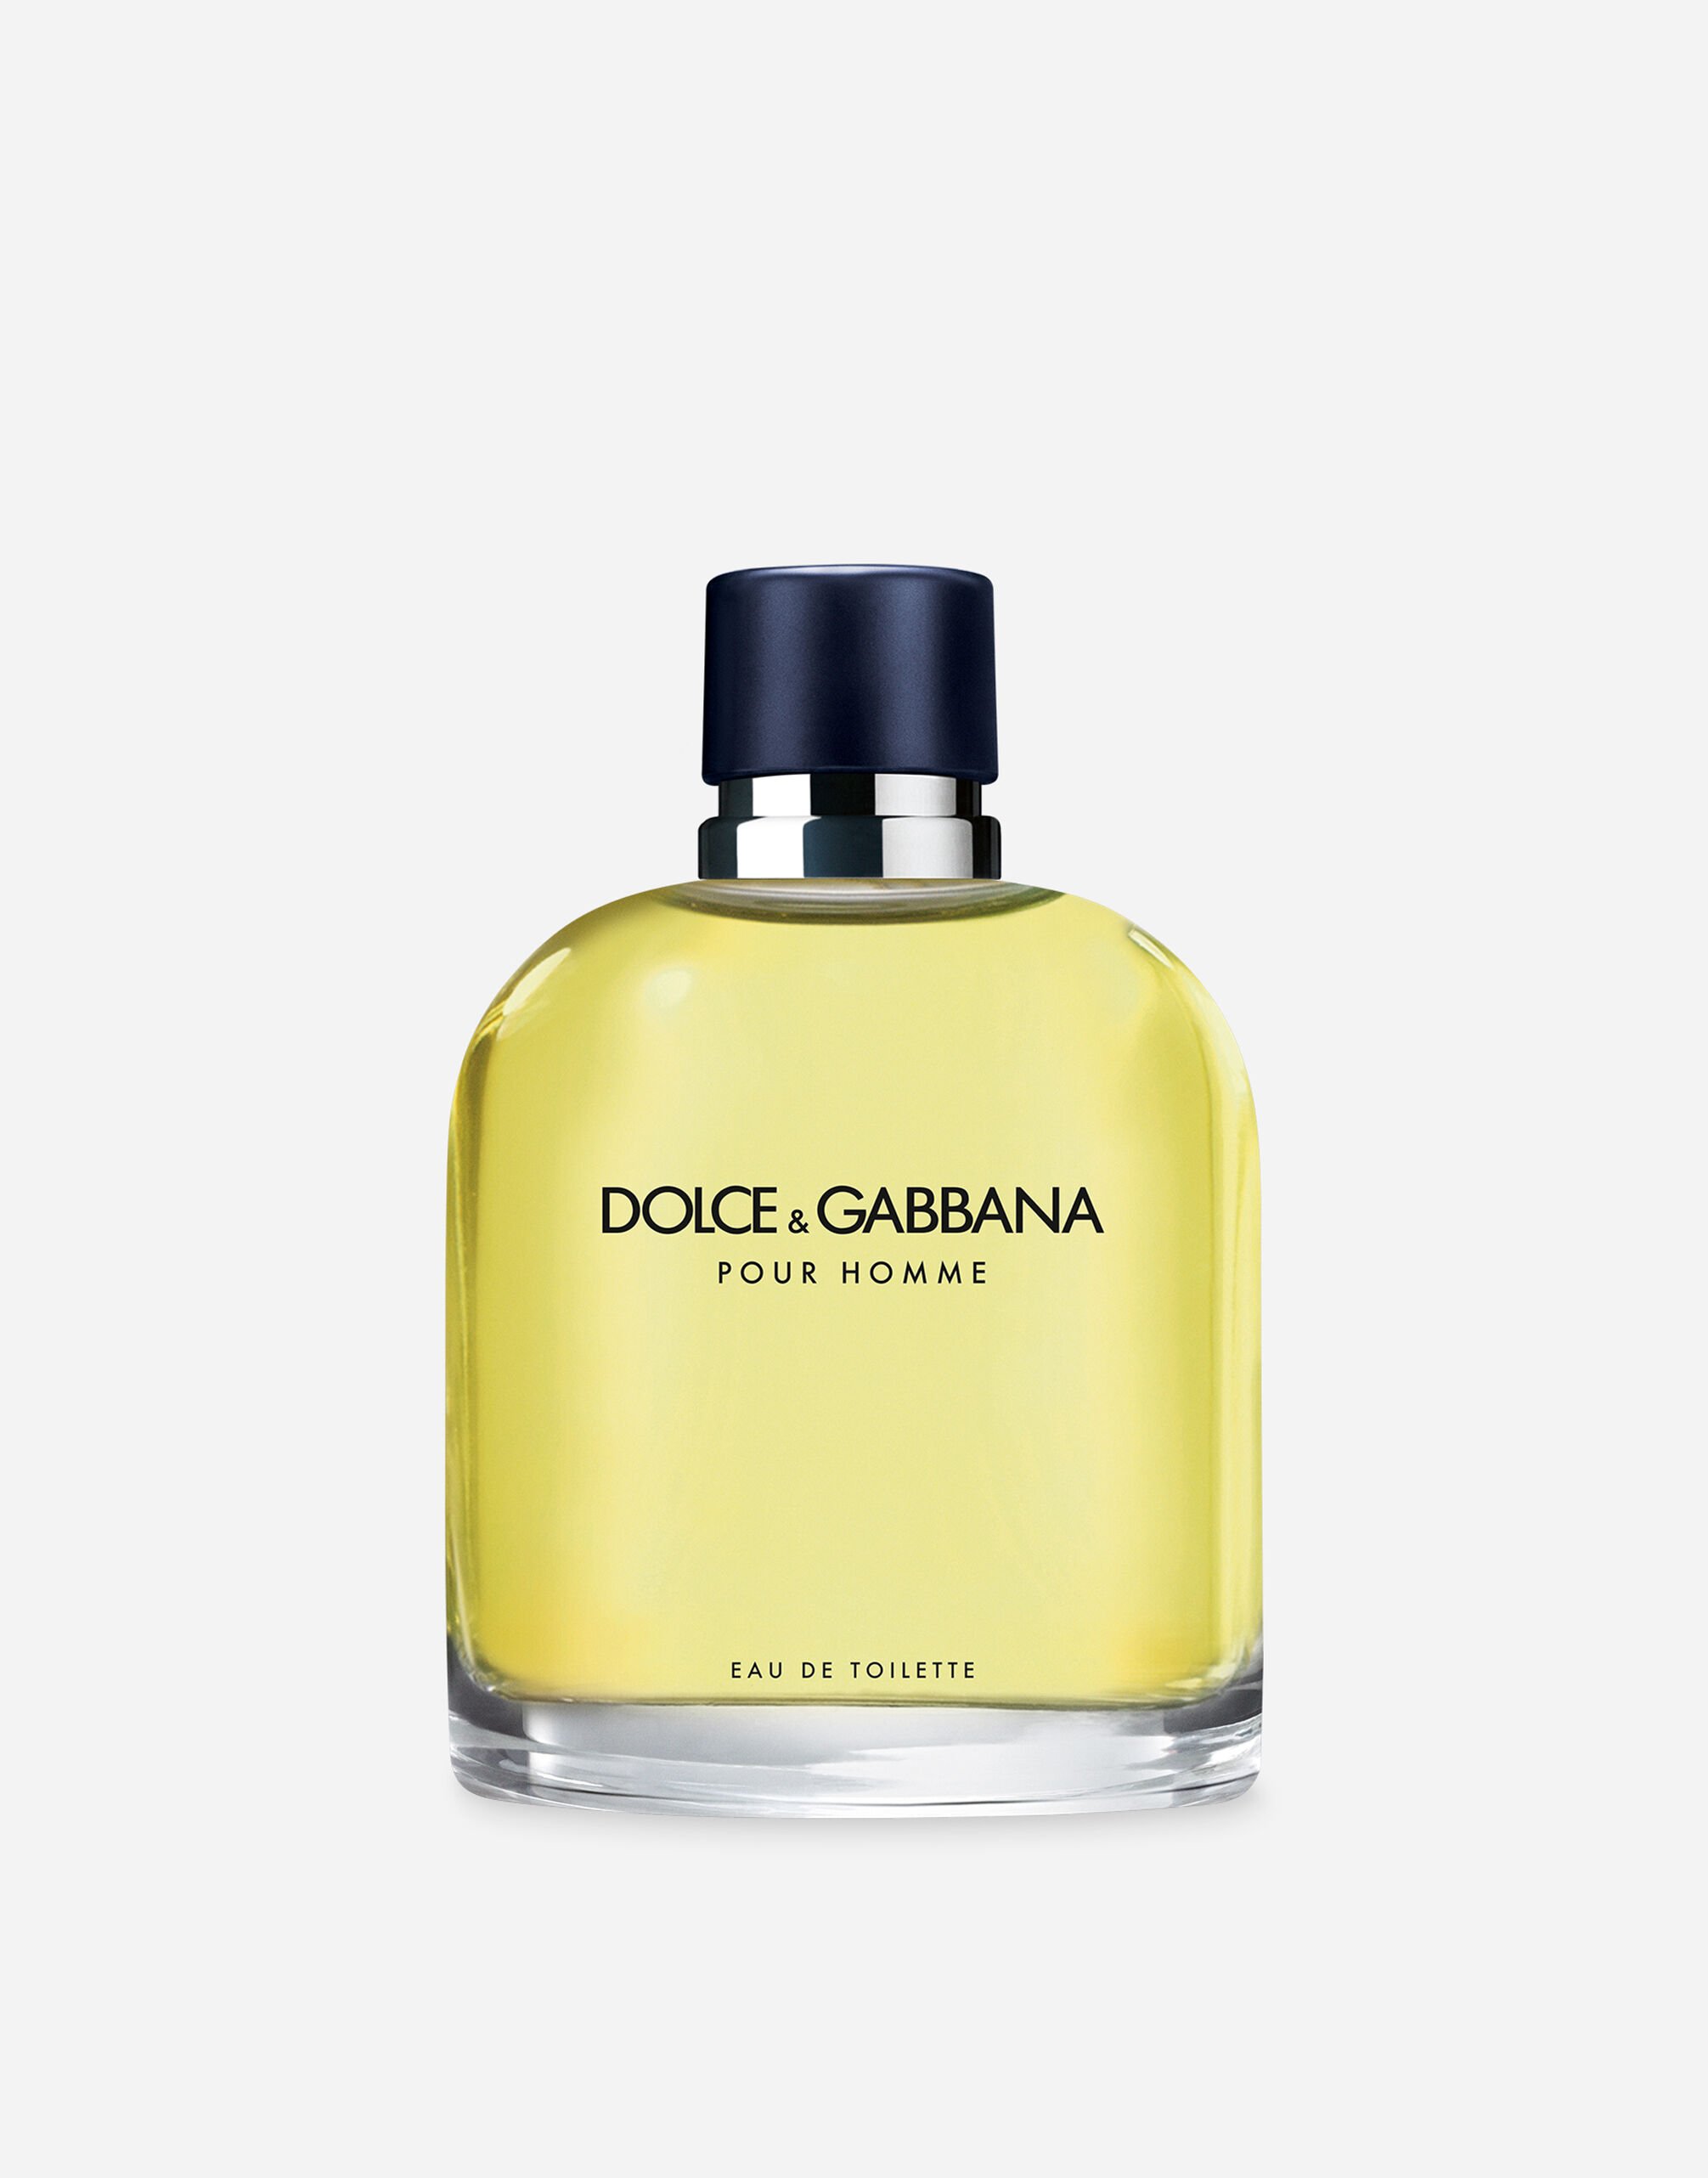 Dolce & Gabbana Pour Homme Eau de Toilette - VT00KBVT000